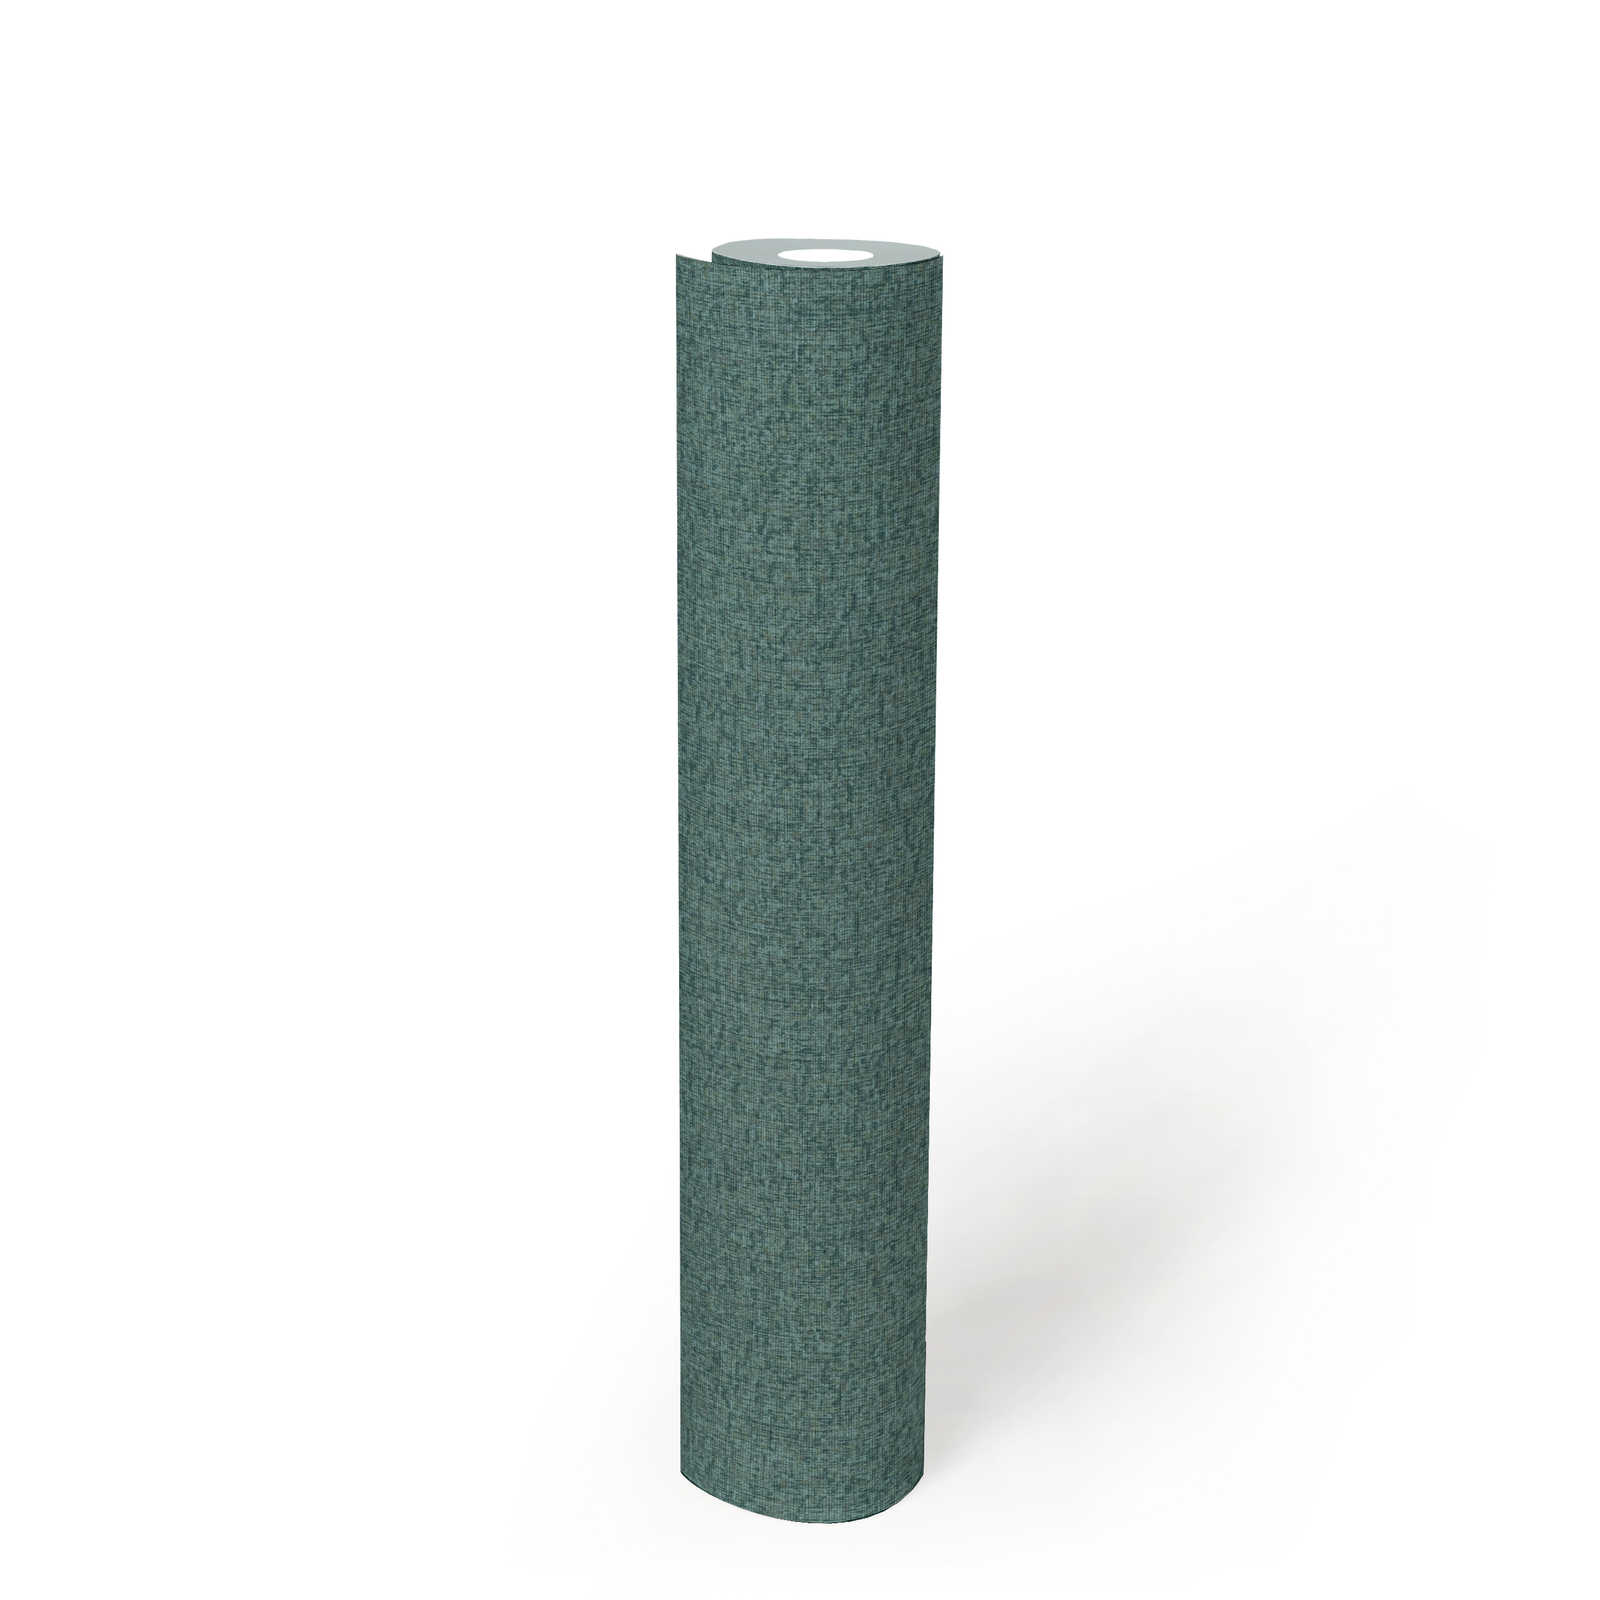             papier peint en papier à motifs structurés uni, mat - vert, pétrole
        